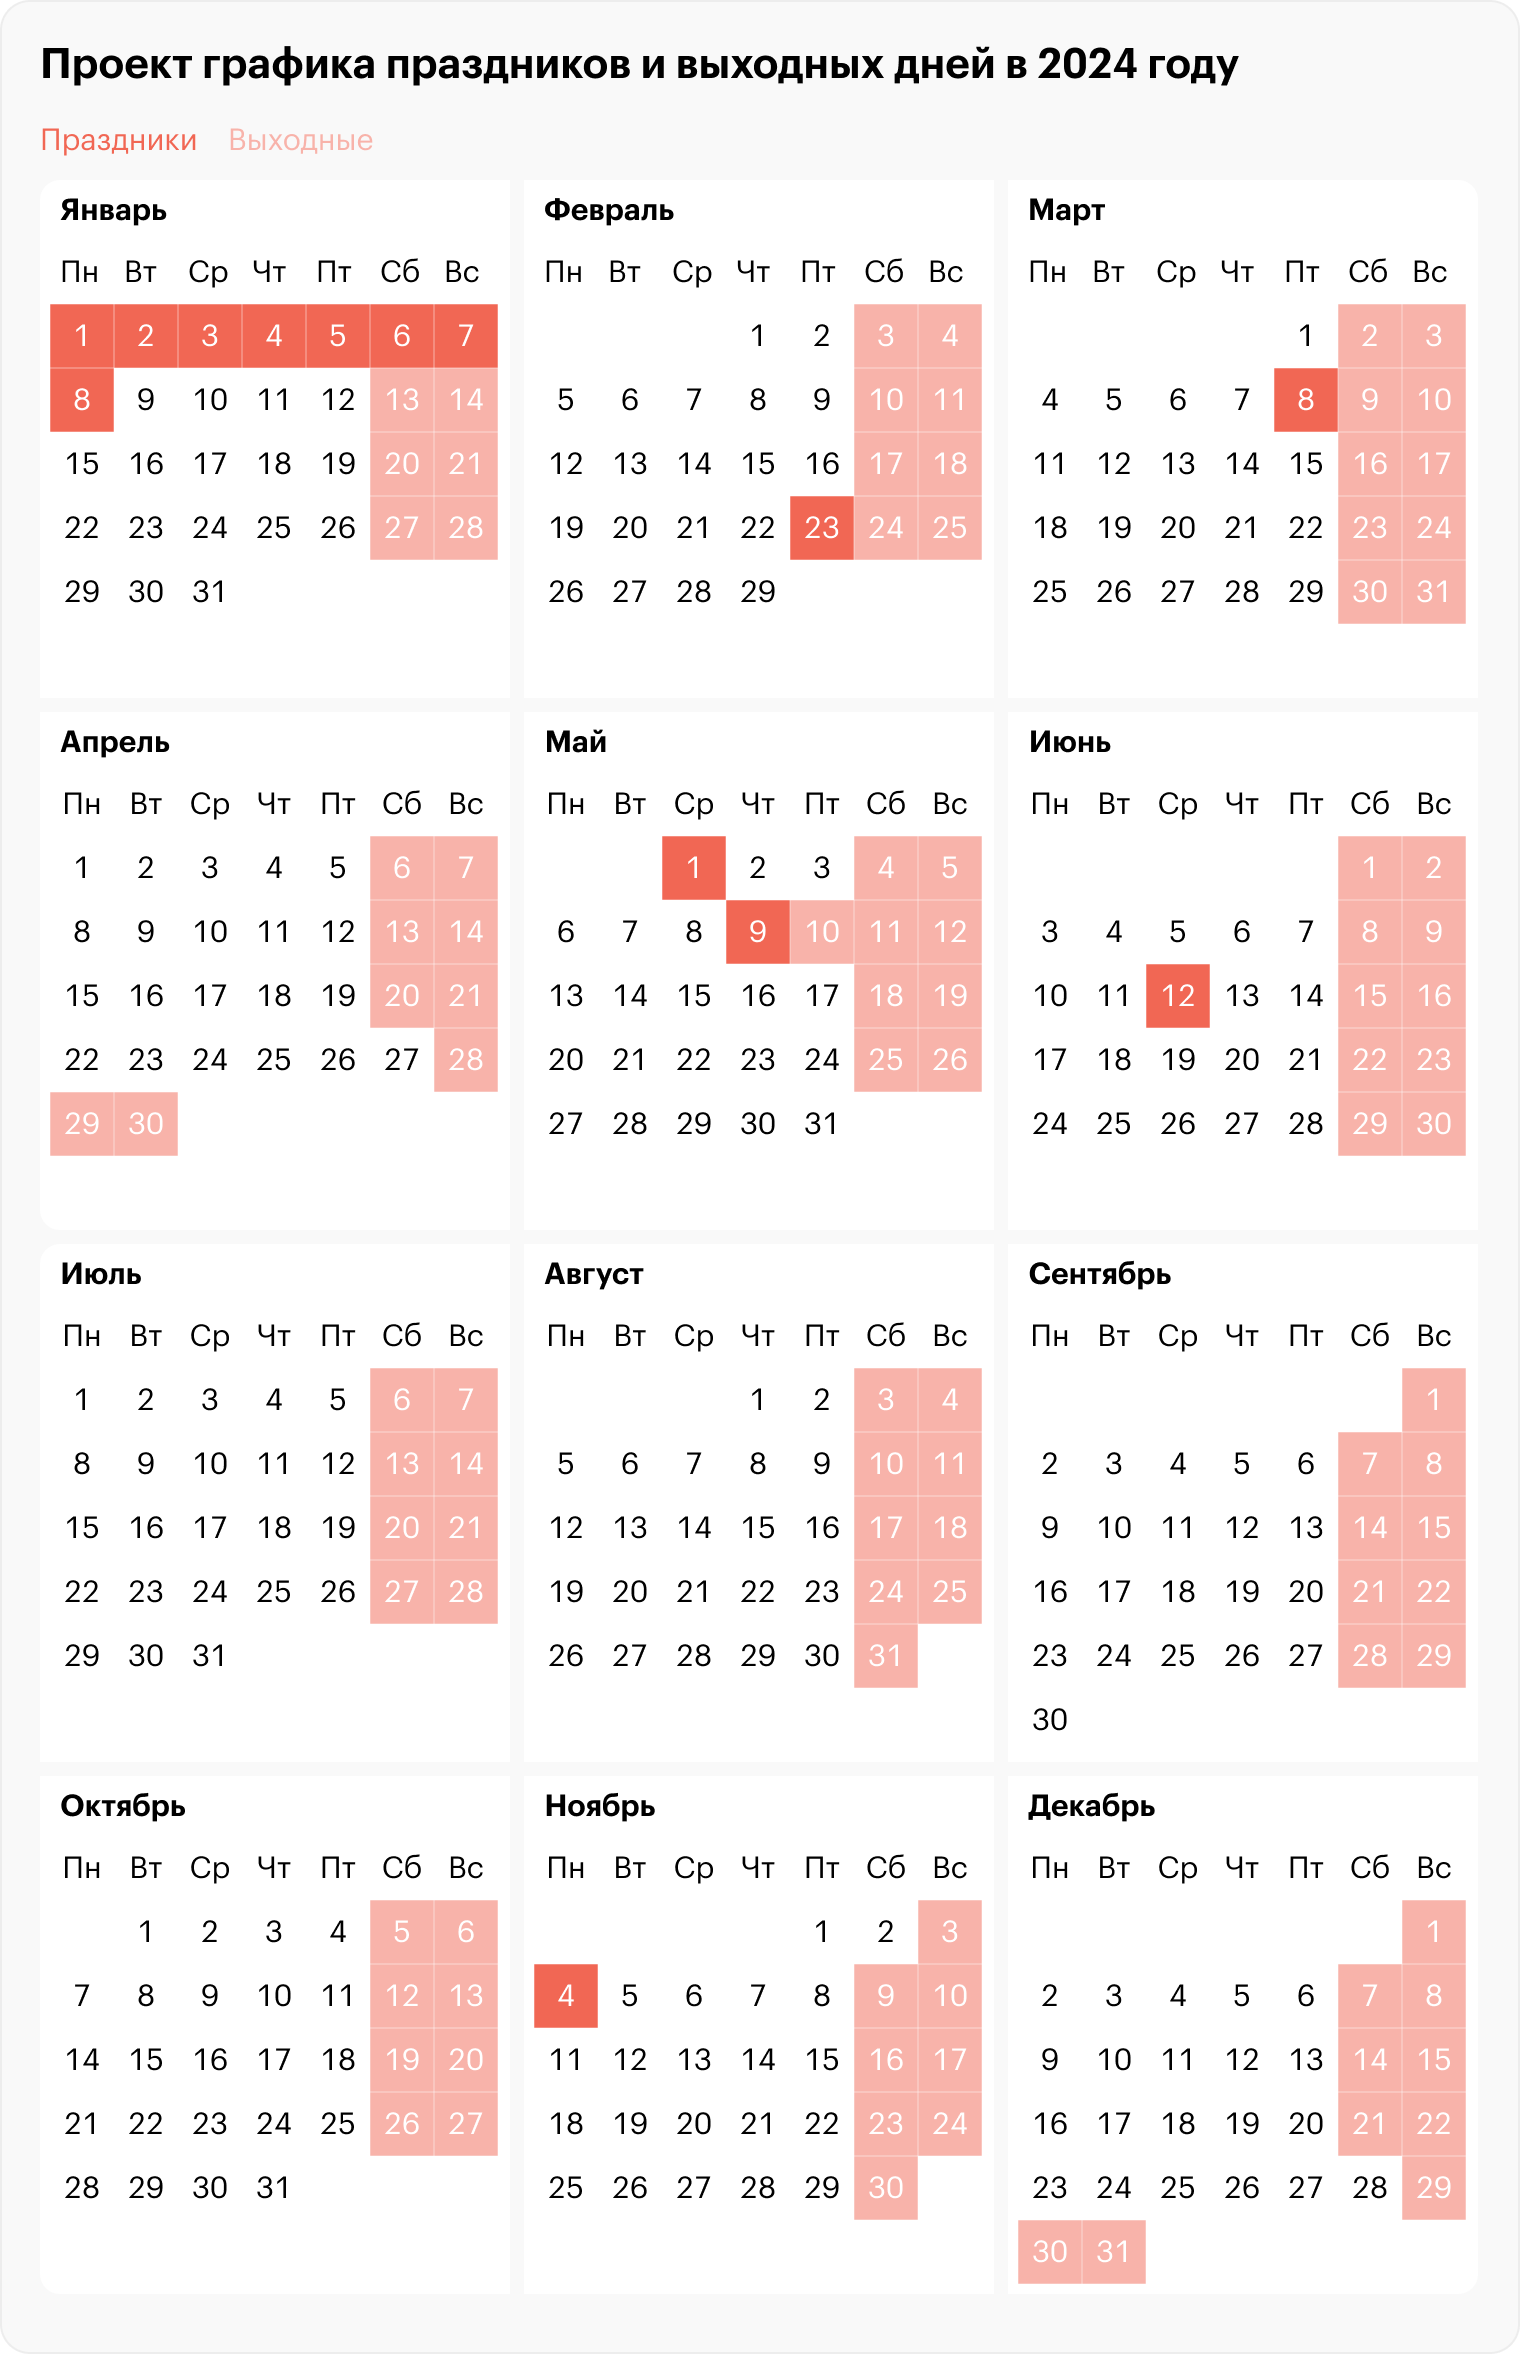 Выходные и праздничные дни в 2024 году в России. Календарь 2024 с праздниками. Календарь выходных и праздничных дней на 2024 год в России. Календарь на 2024 год с праздниками и выходными.